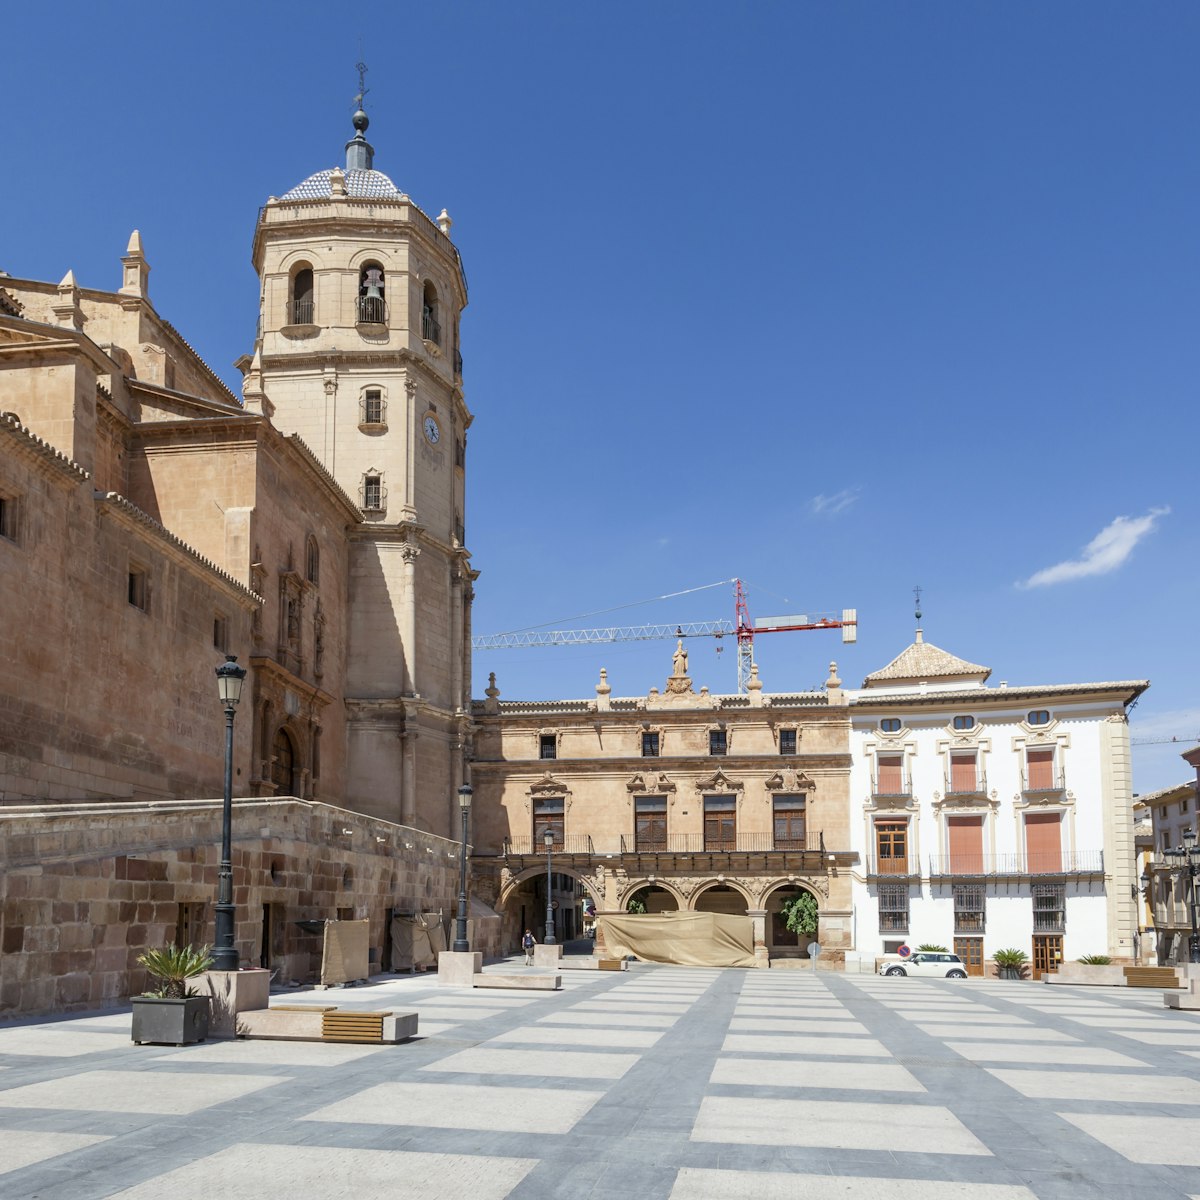 Historic square Plaza de Espana in the old town of Lorca. 